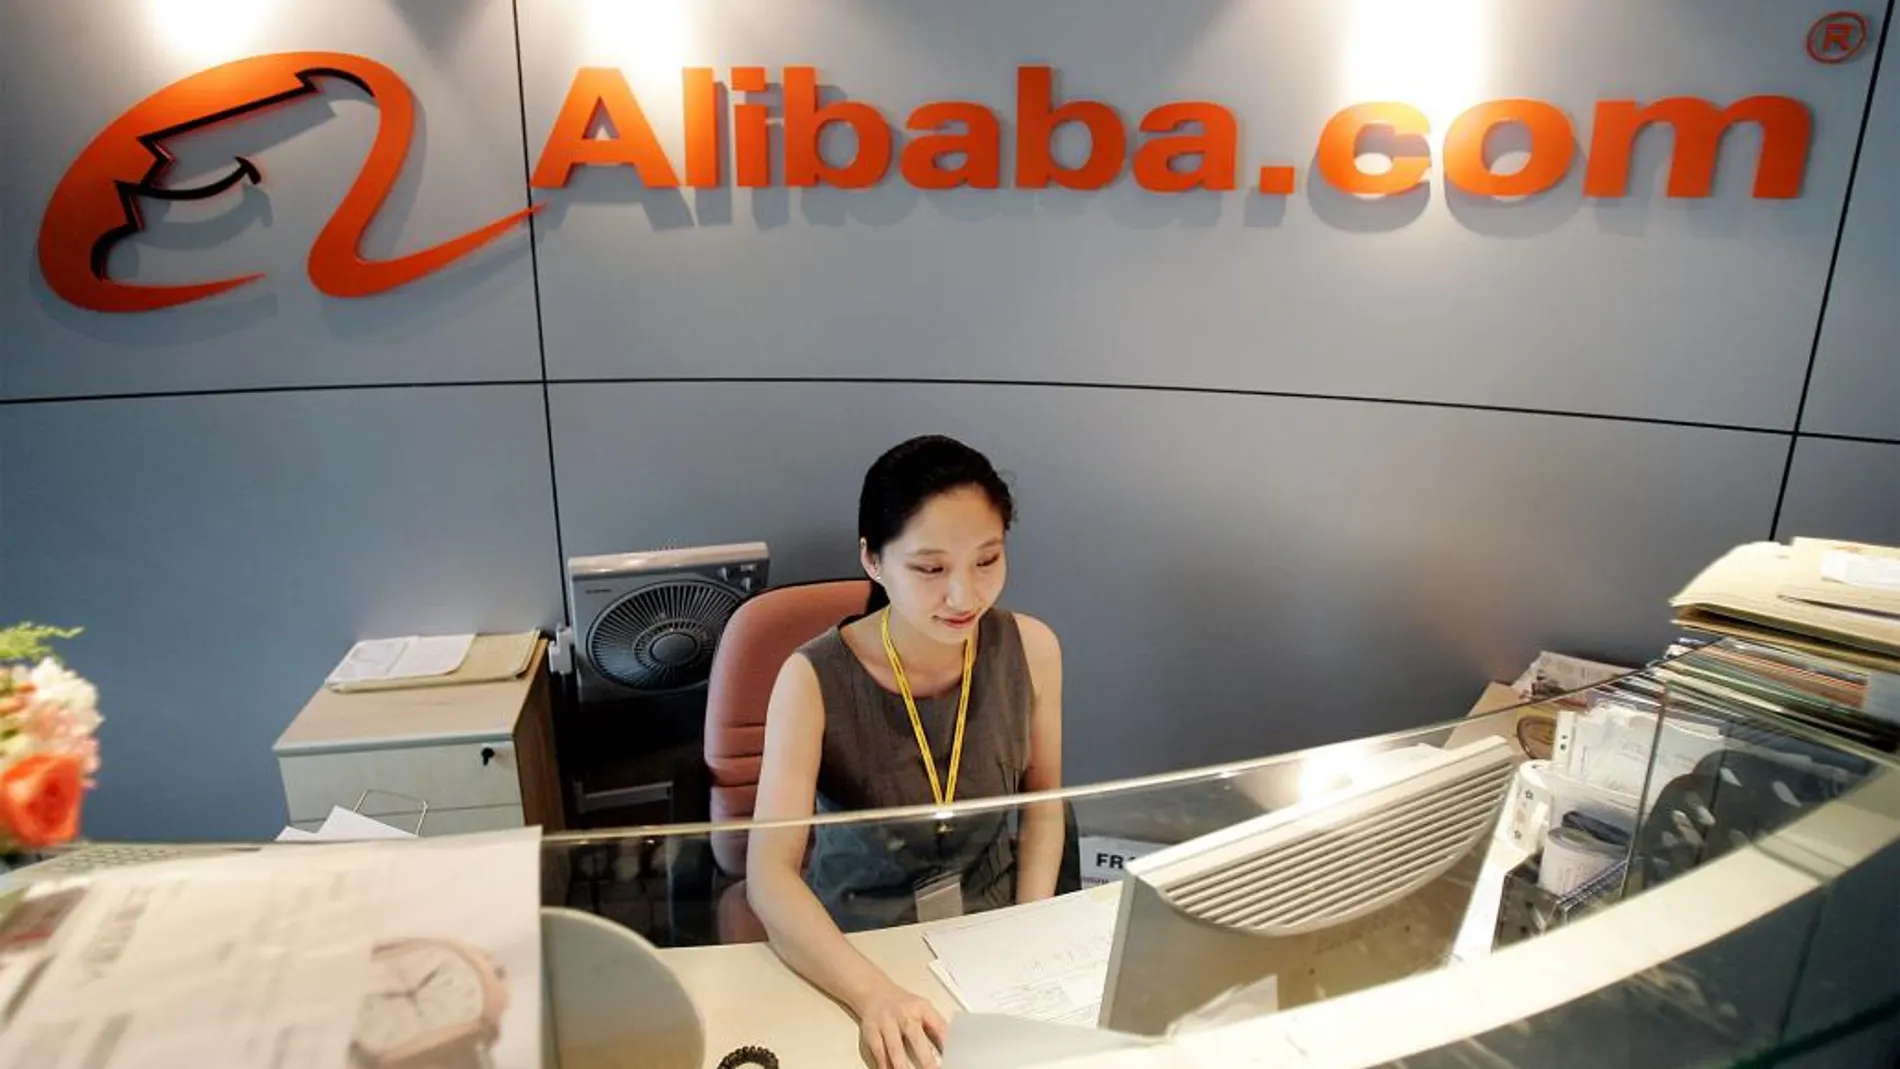 La sede de Alibaba, en una imagen de archivo